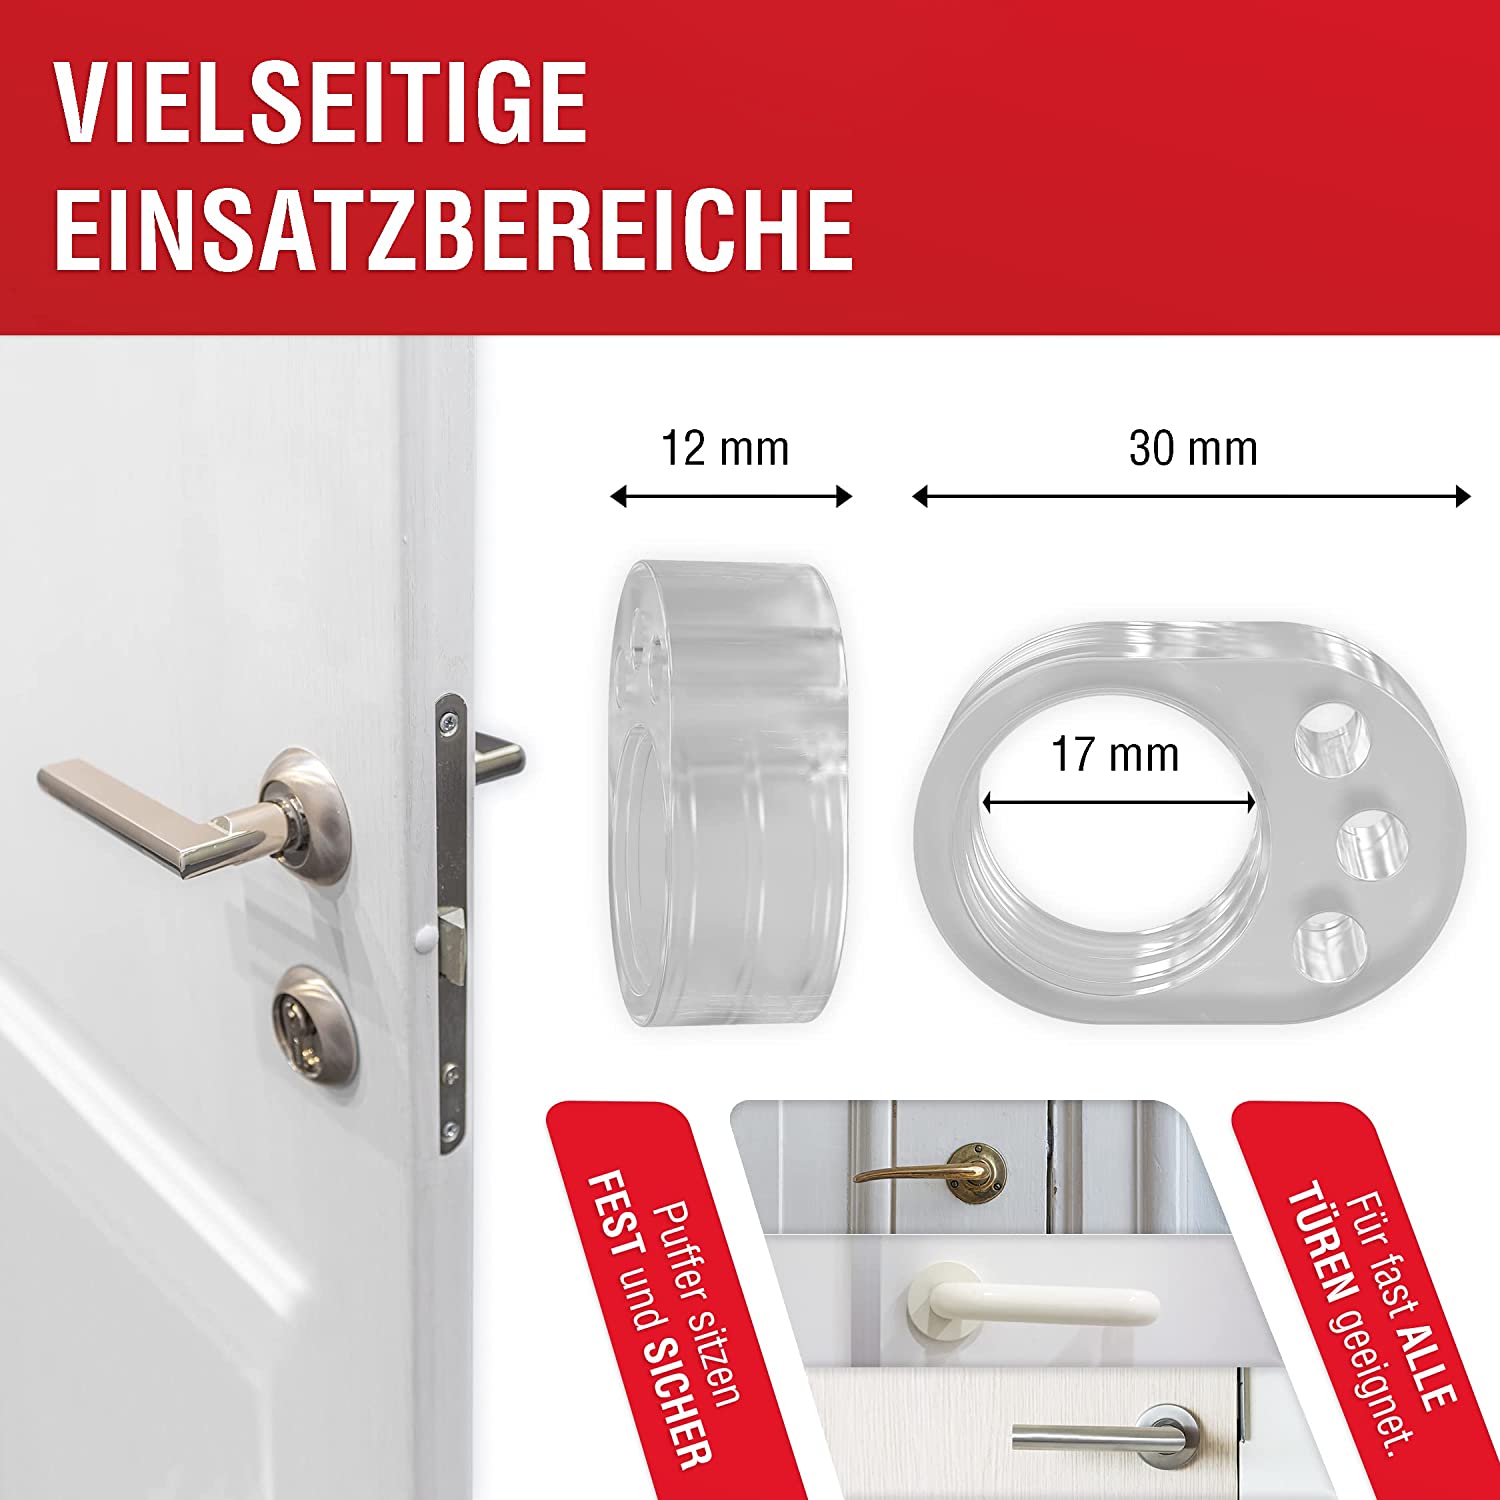 LouMaxx Türklinkenpuffer - 6er Set transparente Türstopper für Türklinke und Fensterklinke Anschlagdämpfer zum Schutz vor Macken